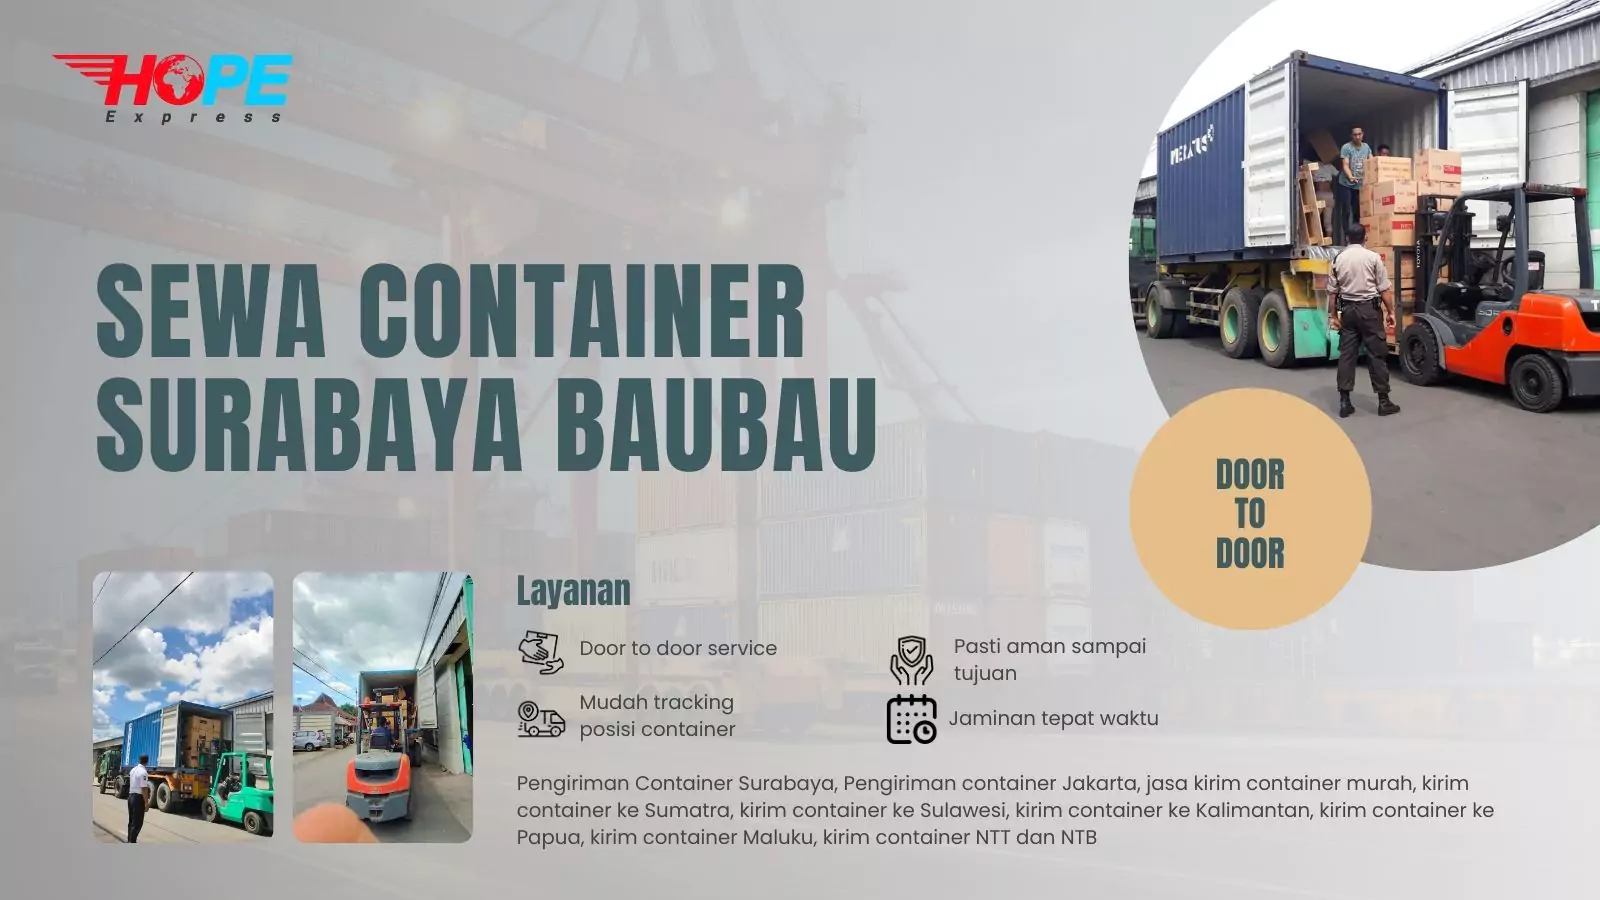 Sewa Container Surabaya Baubau